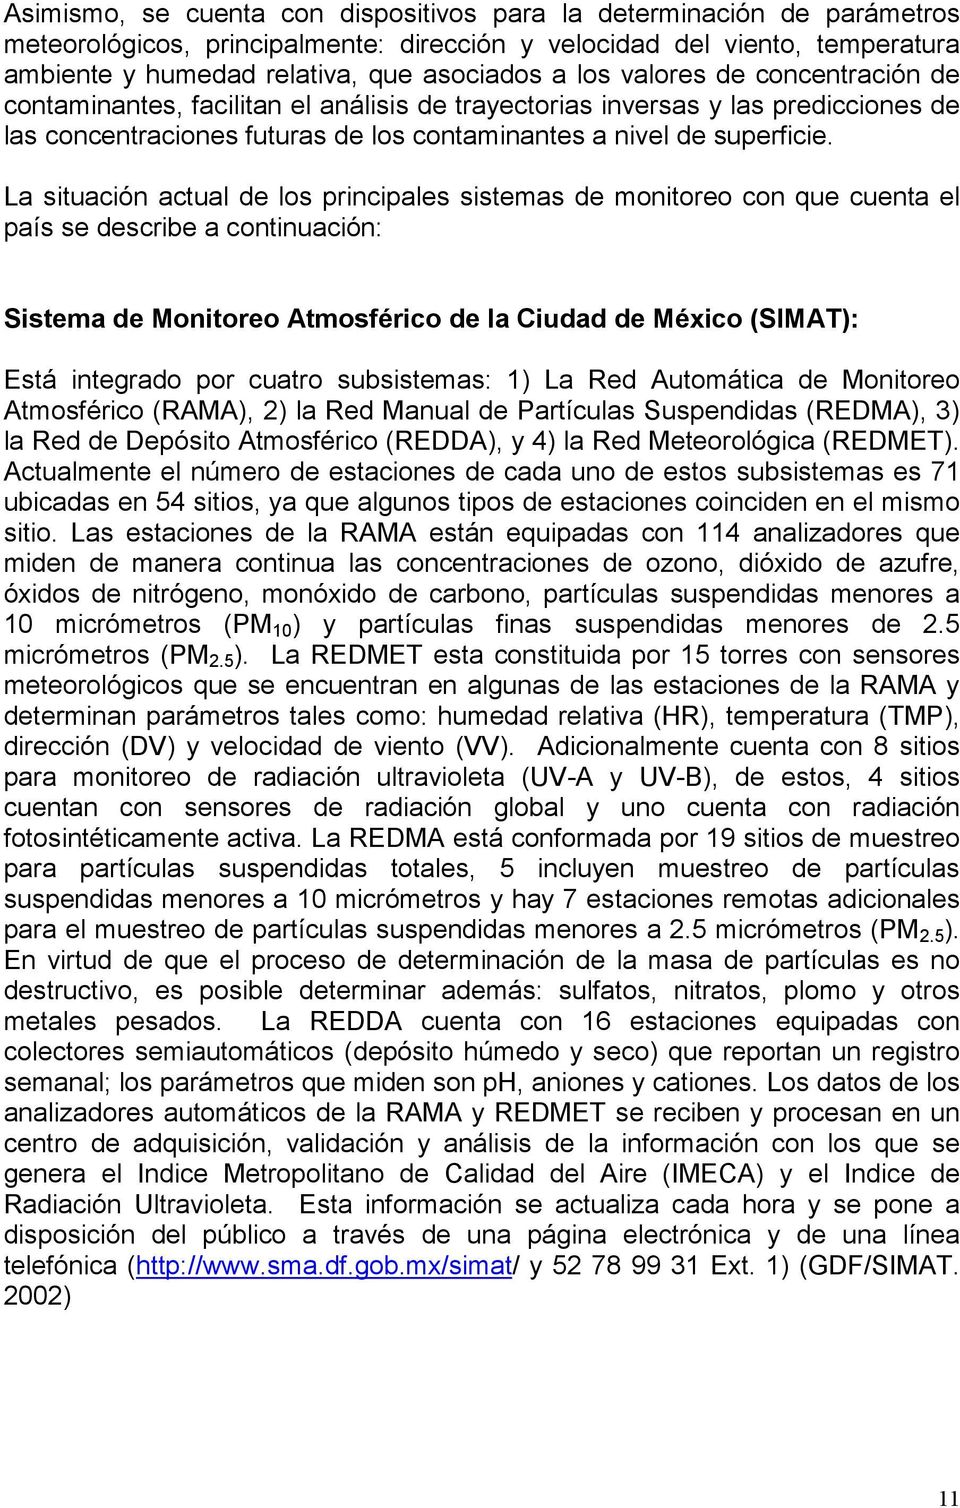 La situación actual de los principales sistemas de monitoreo con que cuenta el país se describe a continuación: Sistema de Monitoreo Atmosférico de la Ciudad de México (SIMAT): Está integrado por